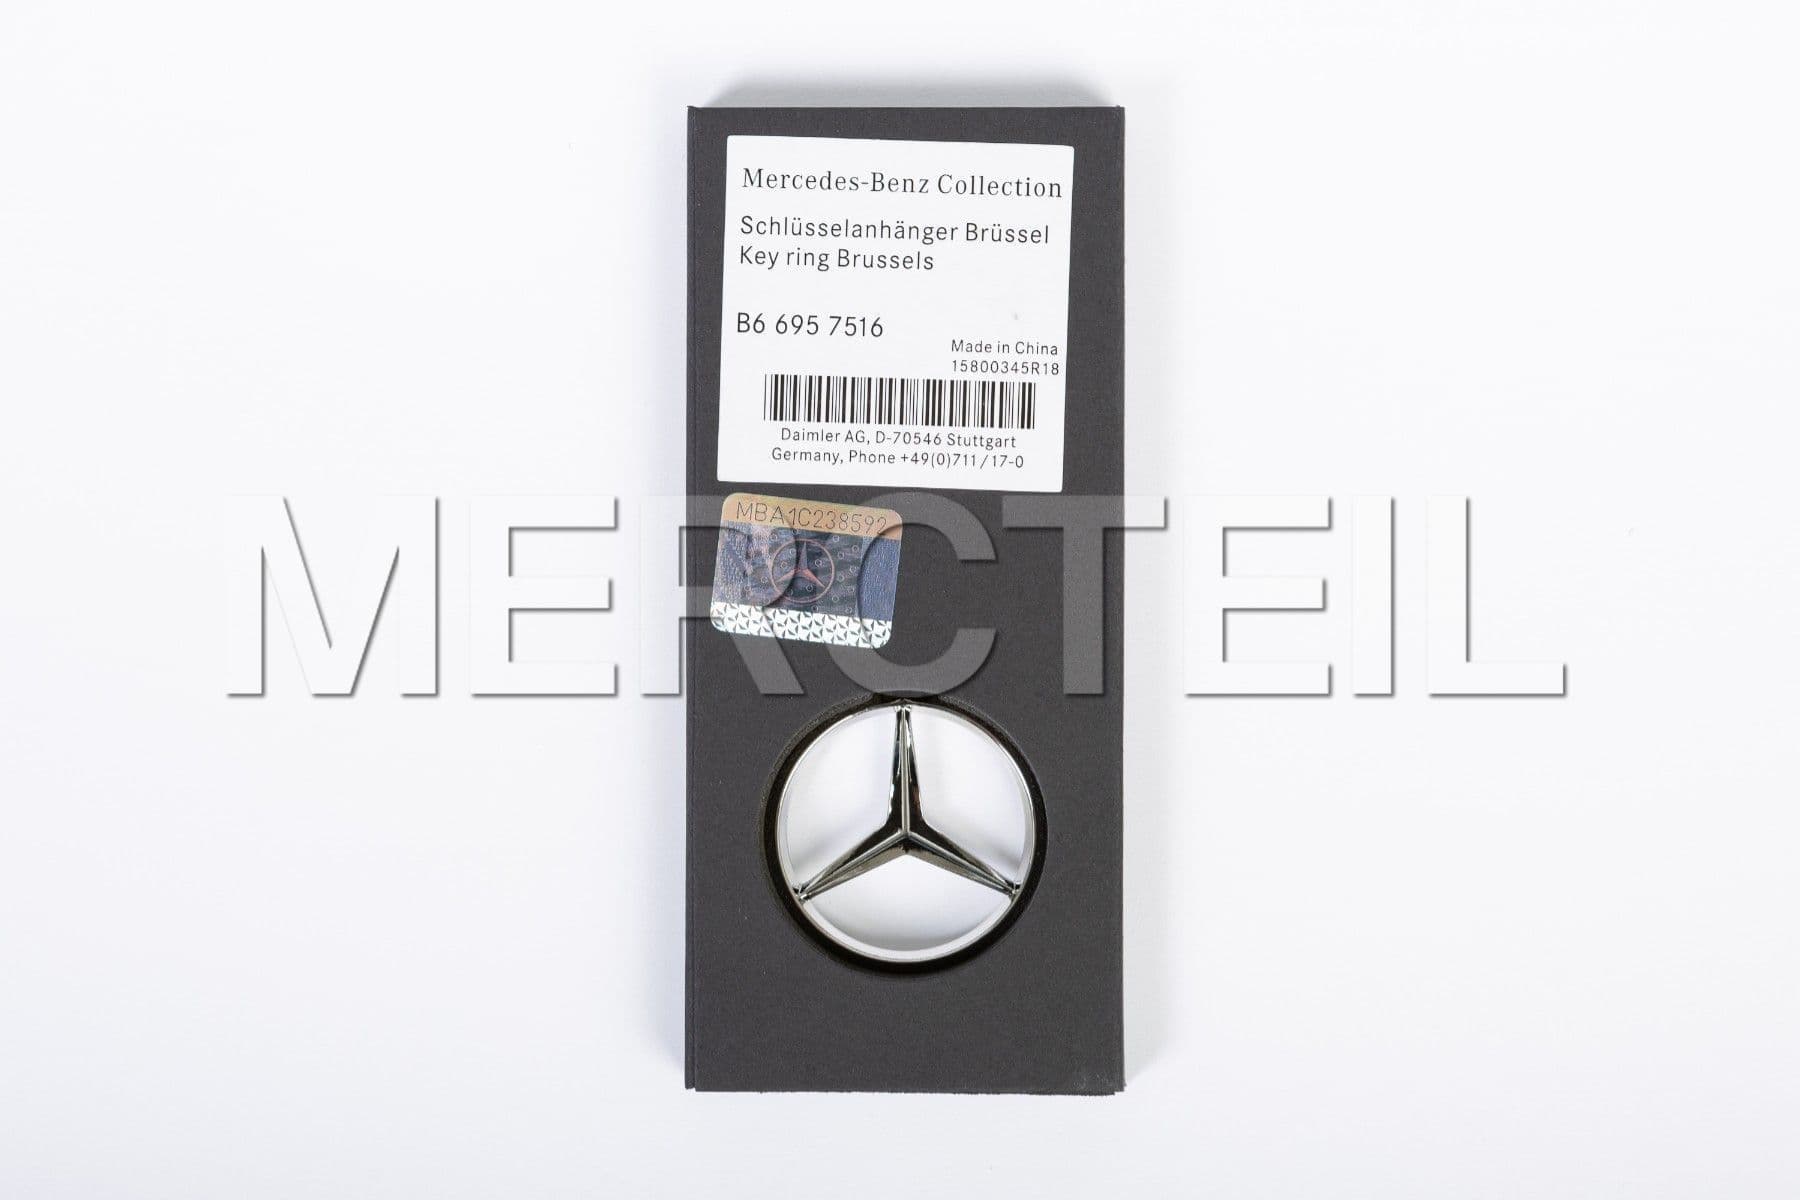 B66957516 Mercedes-Benz Schlüsselanhänger Keyring Stern Brüssel Collection 